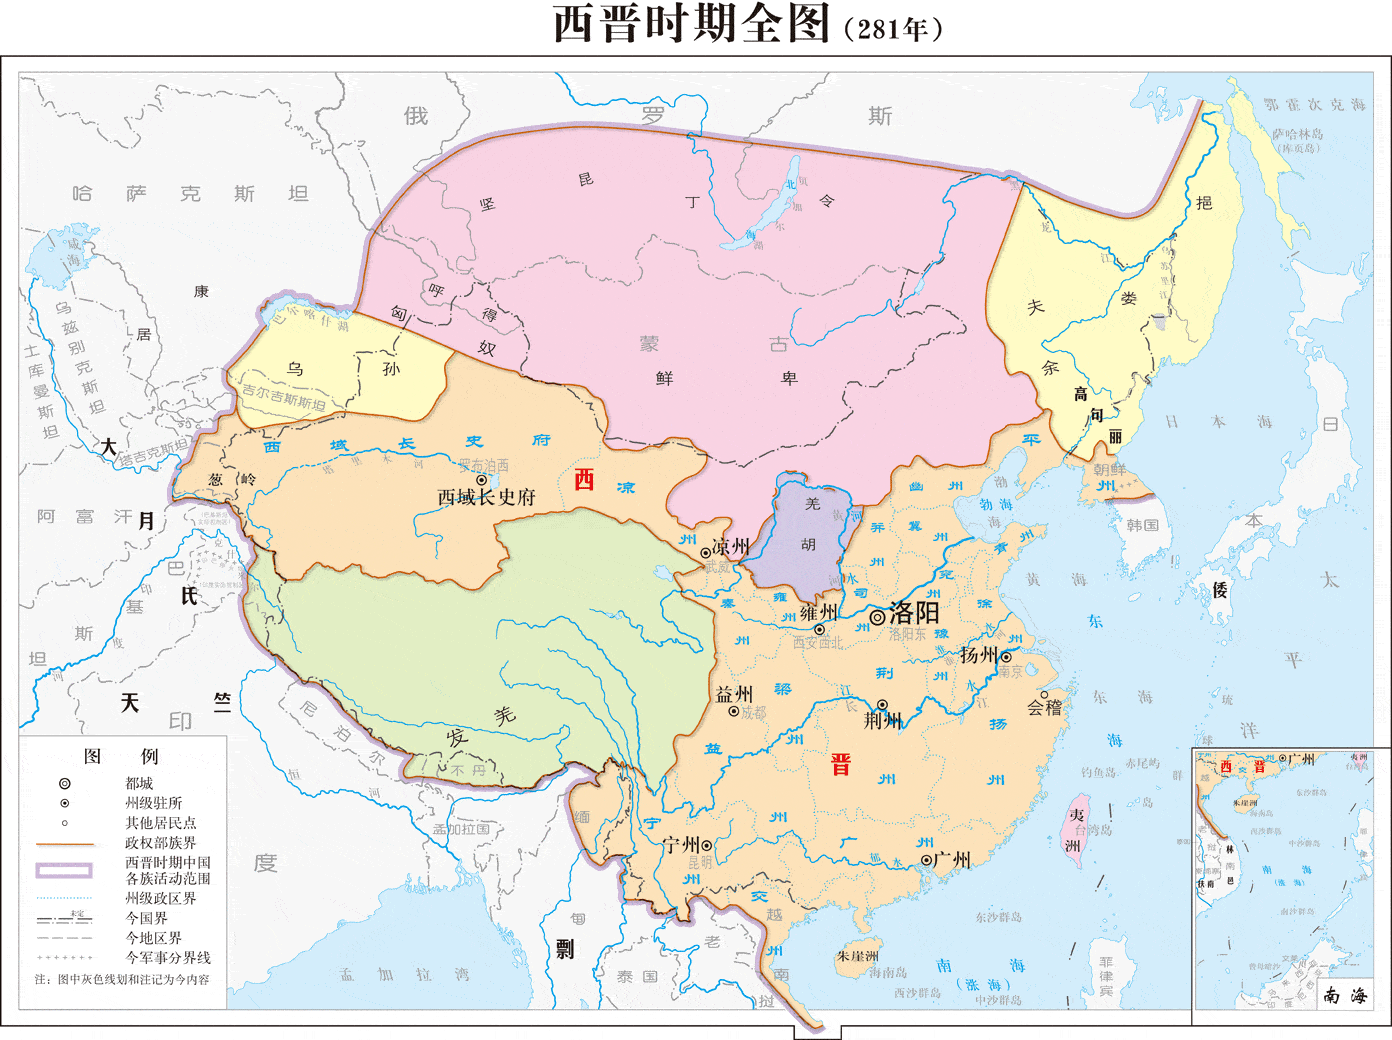 西晋灭吴,一场北方政权统一中国教科书式的战争